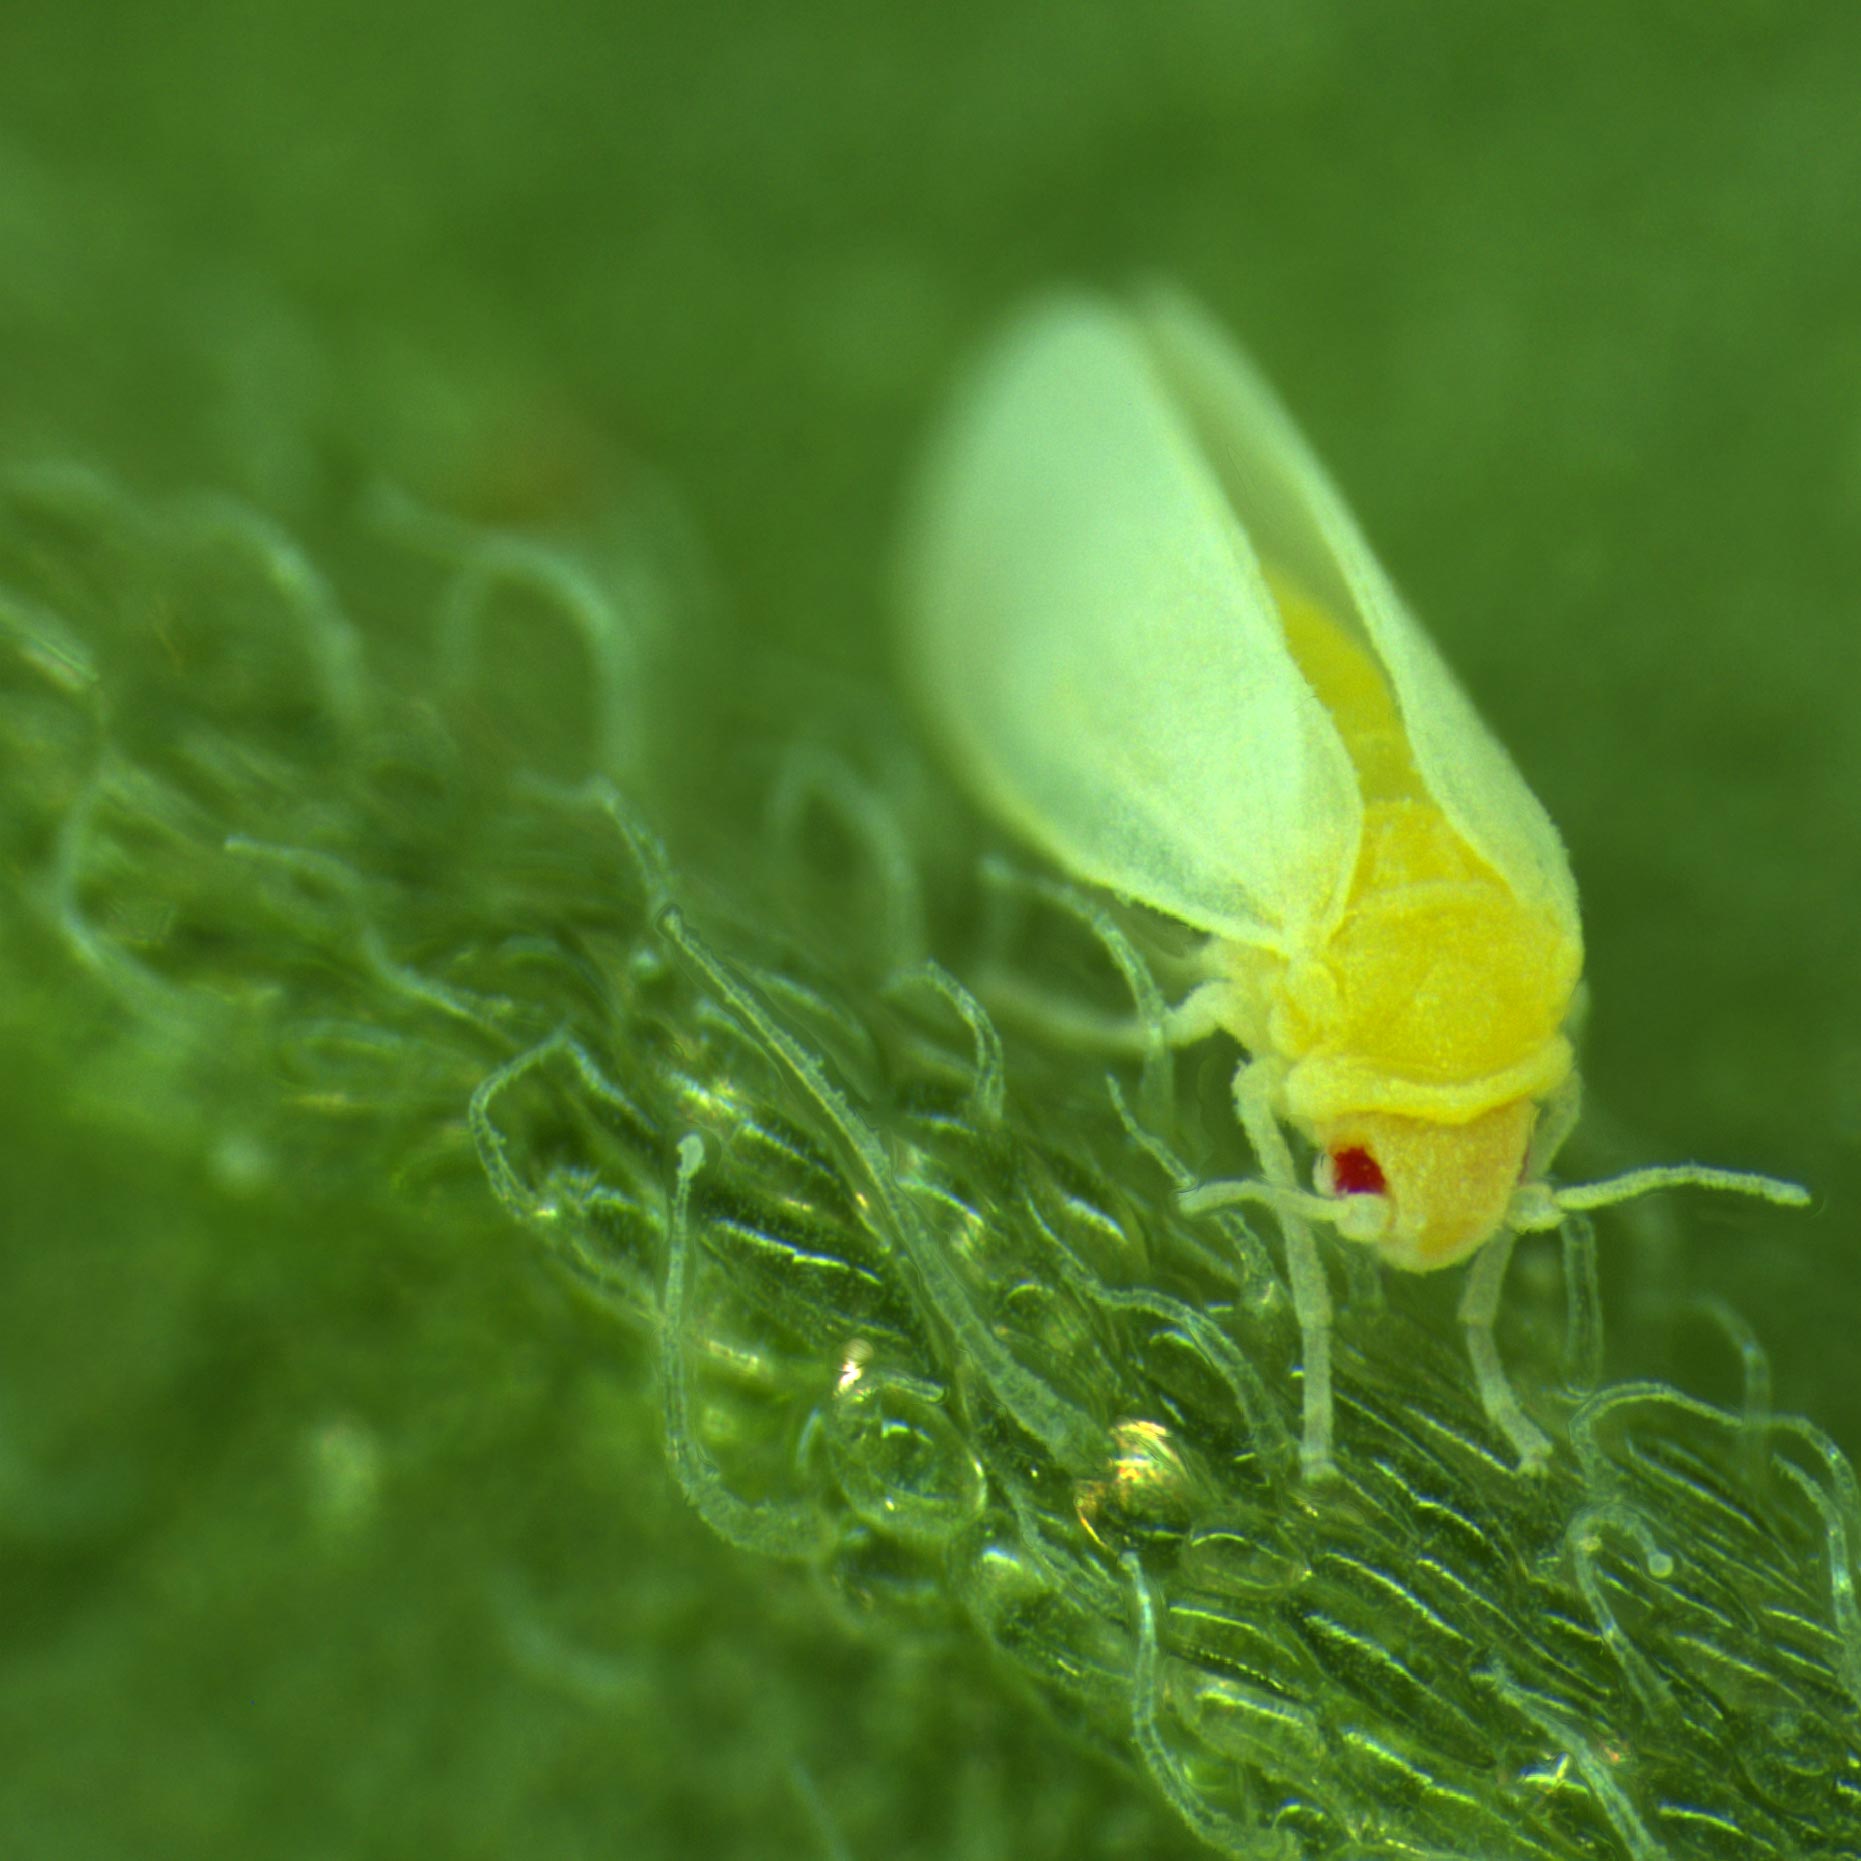 蚜虫样昆虫捕获来自植物的dna 基因将它们屏蔽叶毒素 欧洲杯法国葡萄牙亚盘